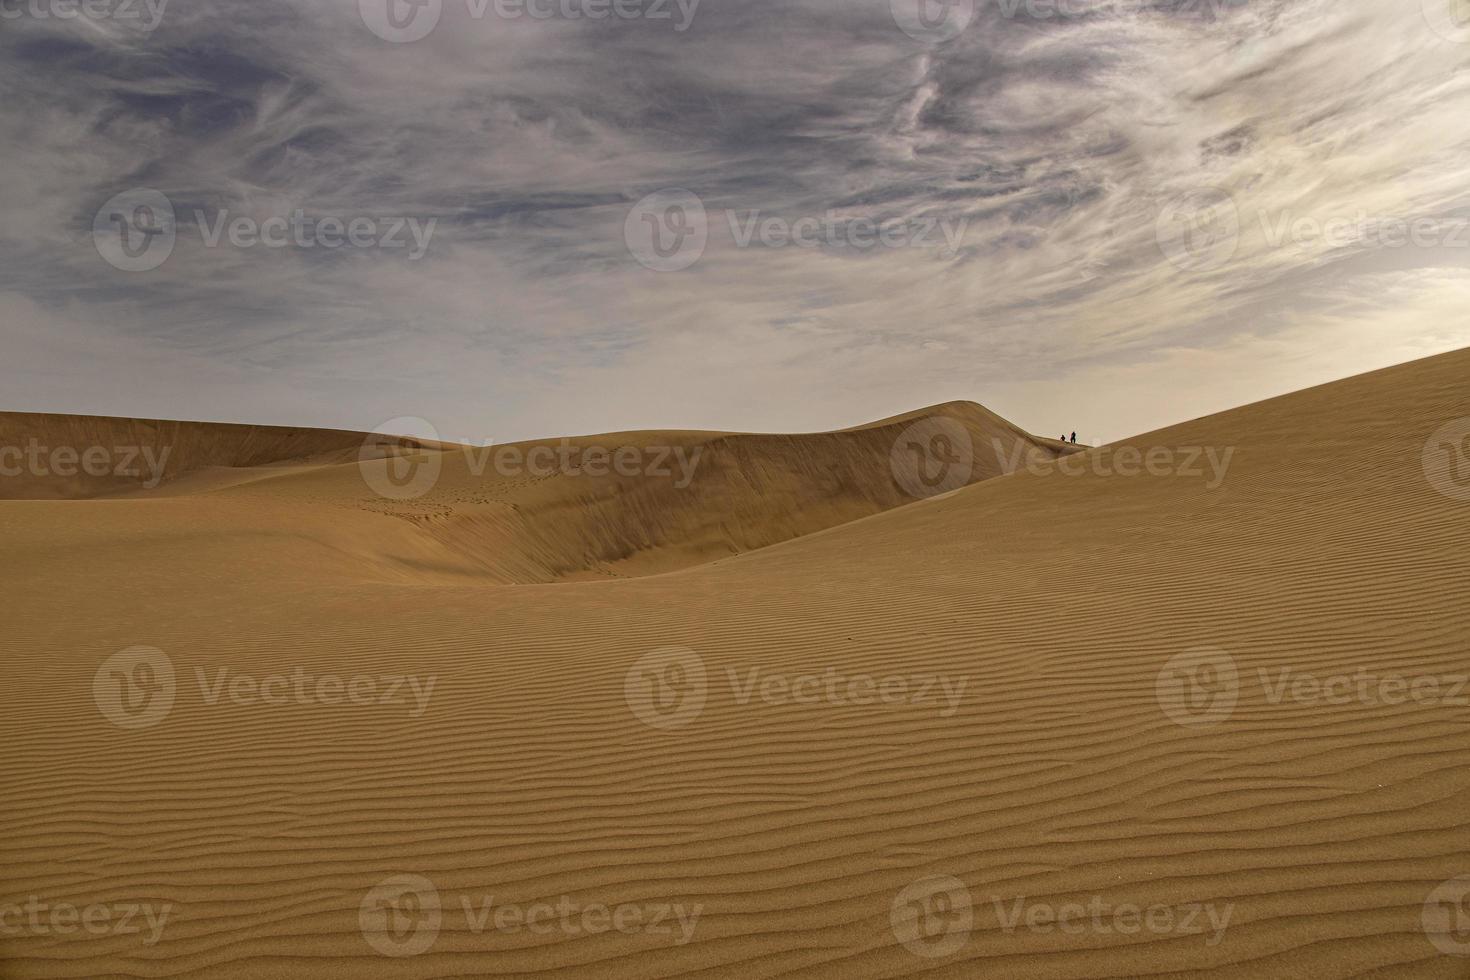 verano Desierto paisaje en un calentar soleado día desde maspalomas dunas en el Español isla de gran canaria foto